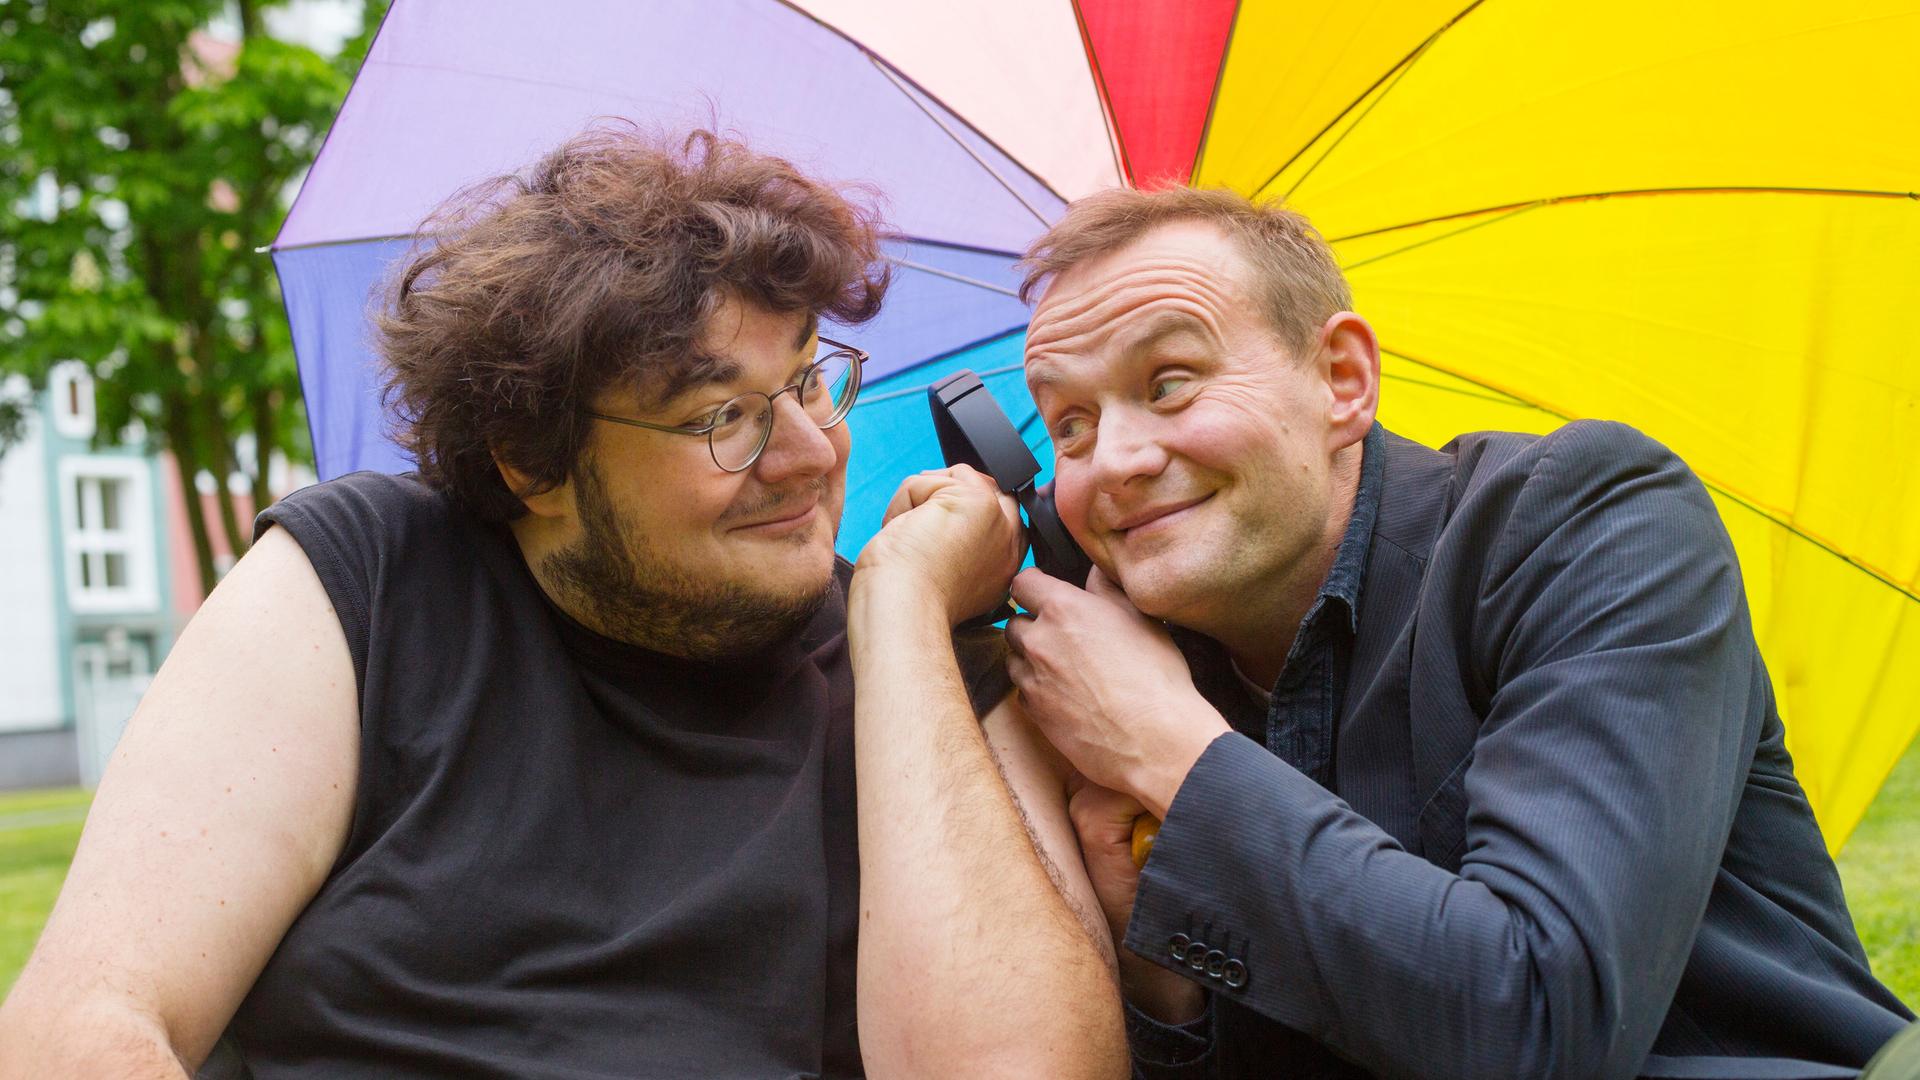 Axel Rahnisch und Devid Striesow unter einem regenbogenfarbenen Regenschirm